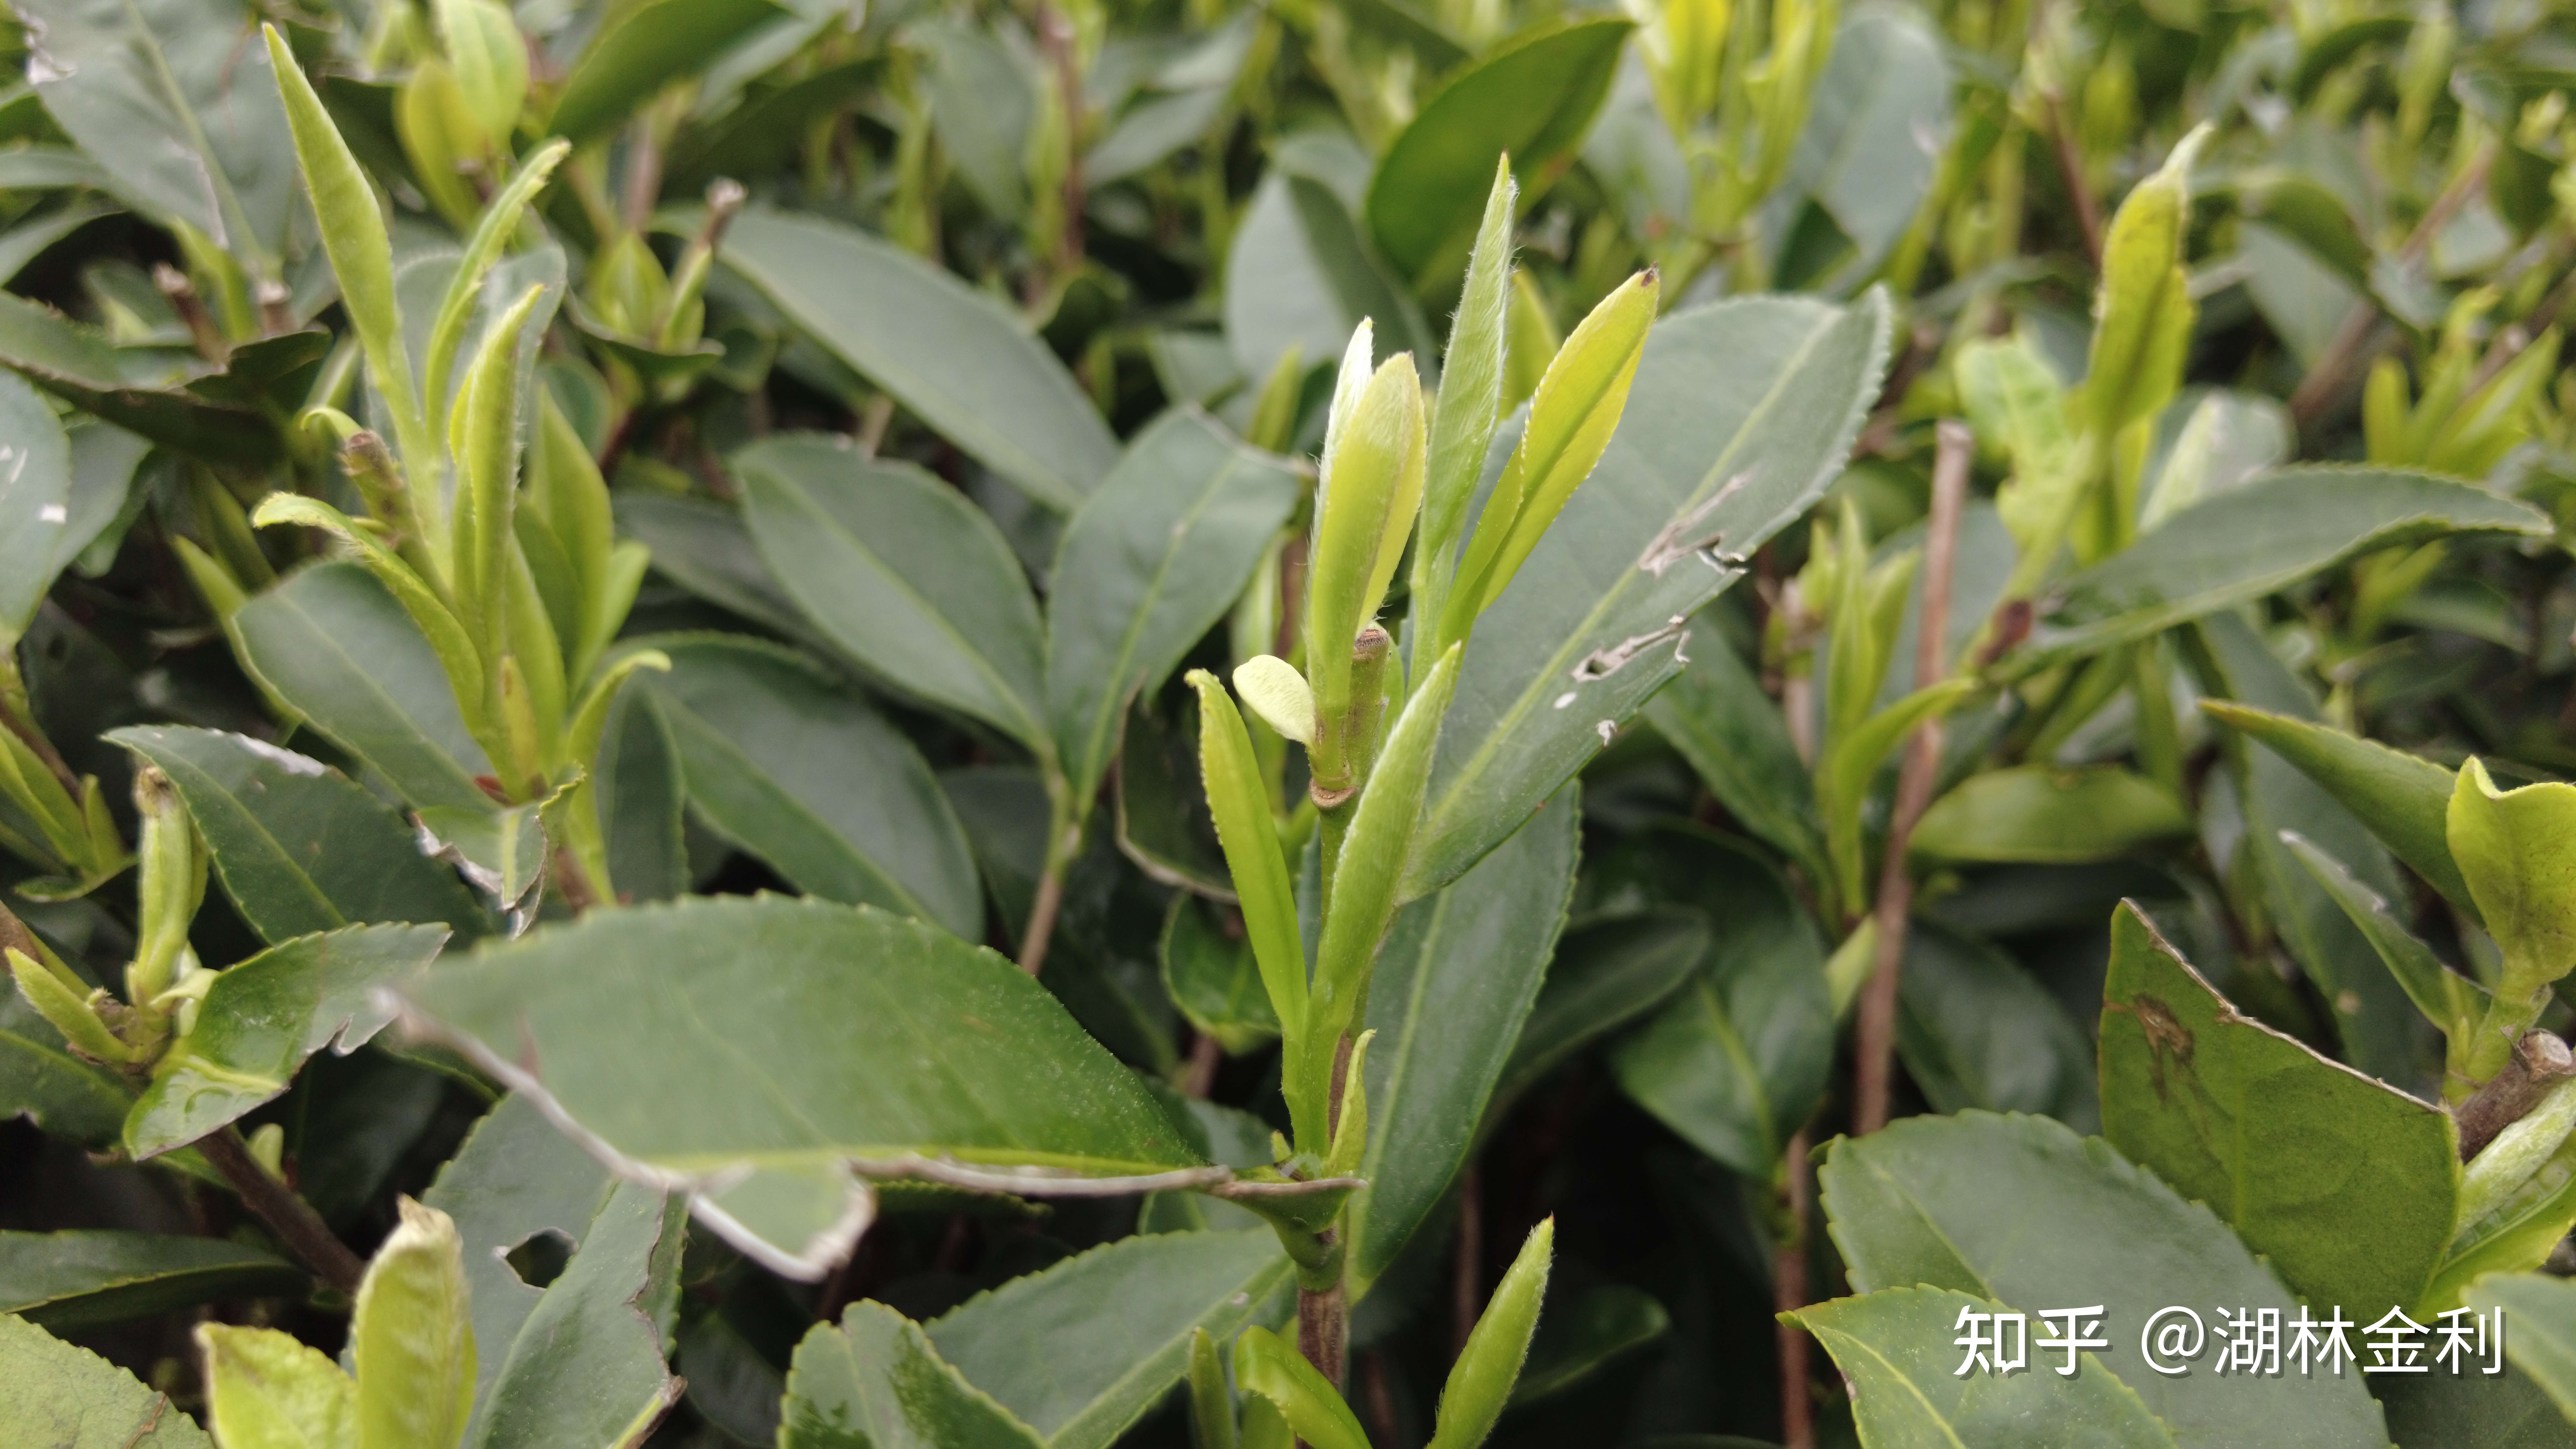 湖林金利 的想法: 福鼎白茶icon的三大茶树品种,福鼎大毫(… 